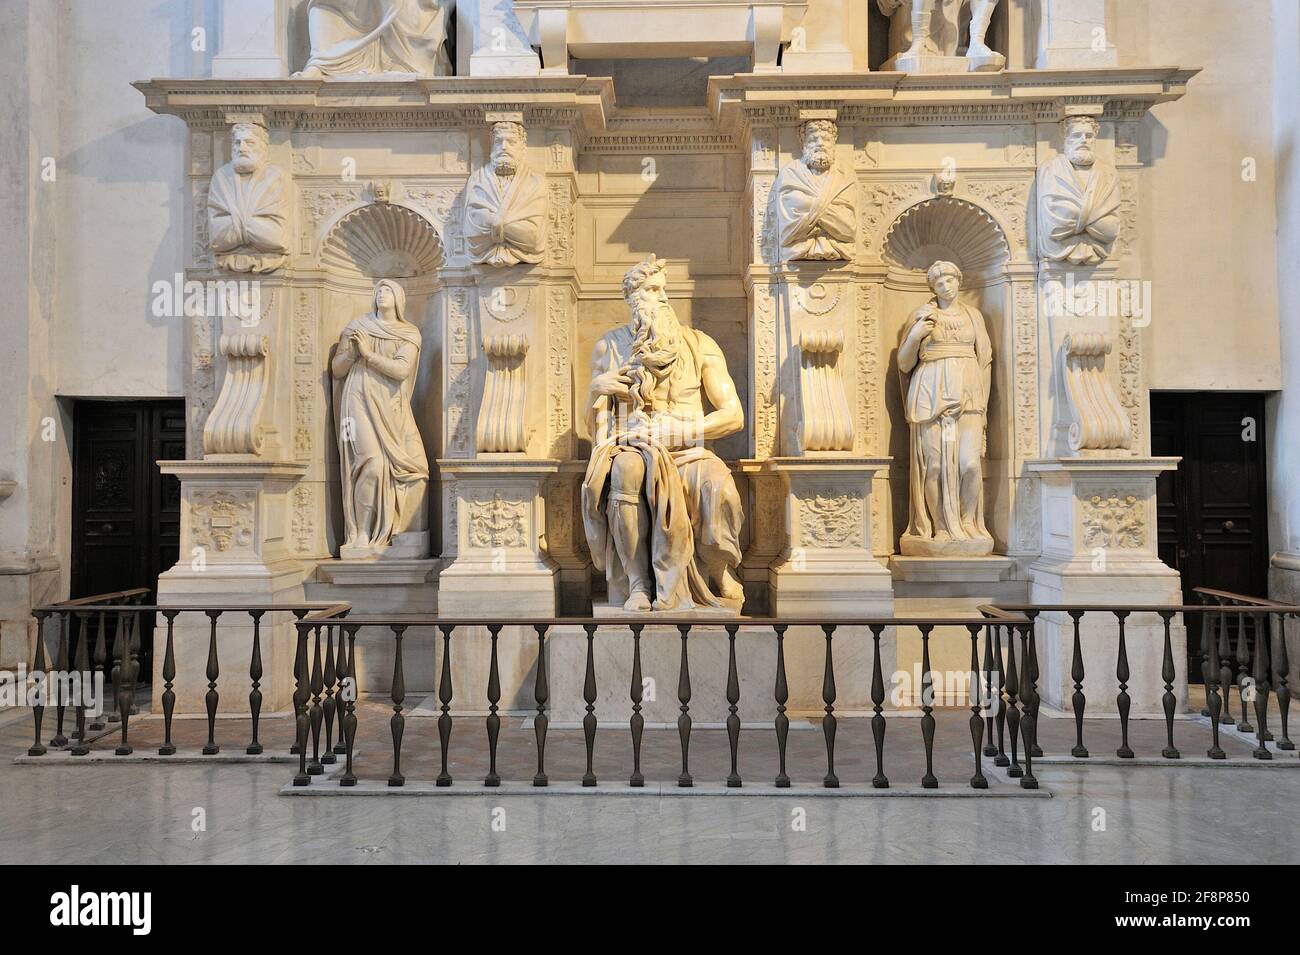 Italy, Rome, basilica of San Pietro in Vincoli, Michelangelo's Moses statue Stock Photo